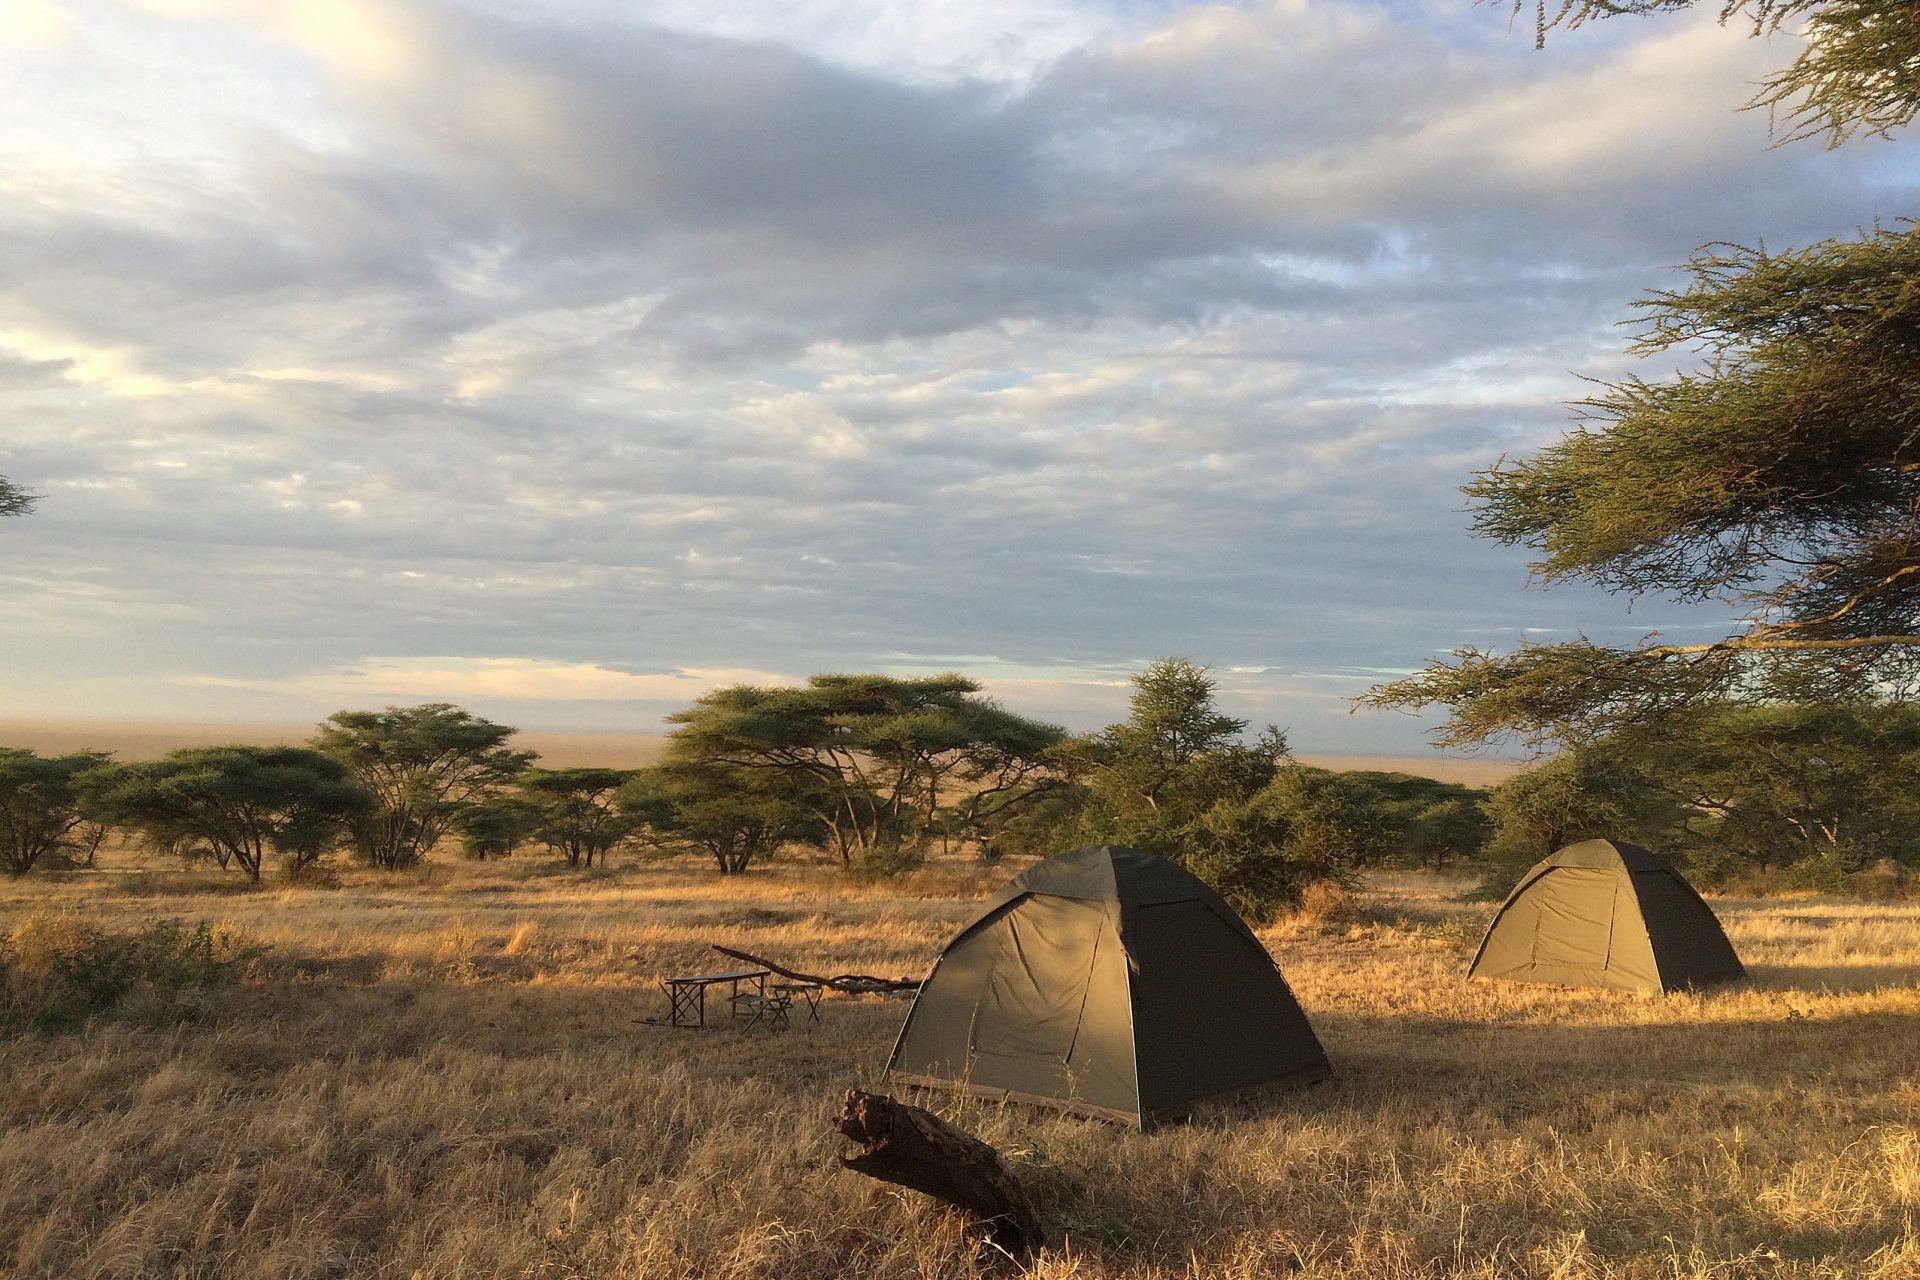 Tentje op de campsite met een geweldig uitzicht over de serengeti met zijn speciale vlaktes en acaciabomen